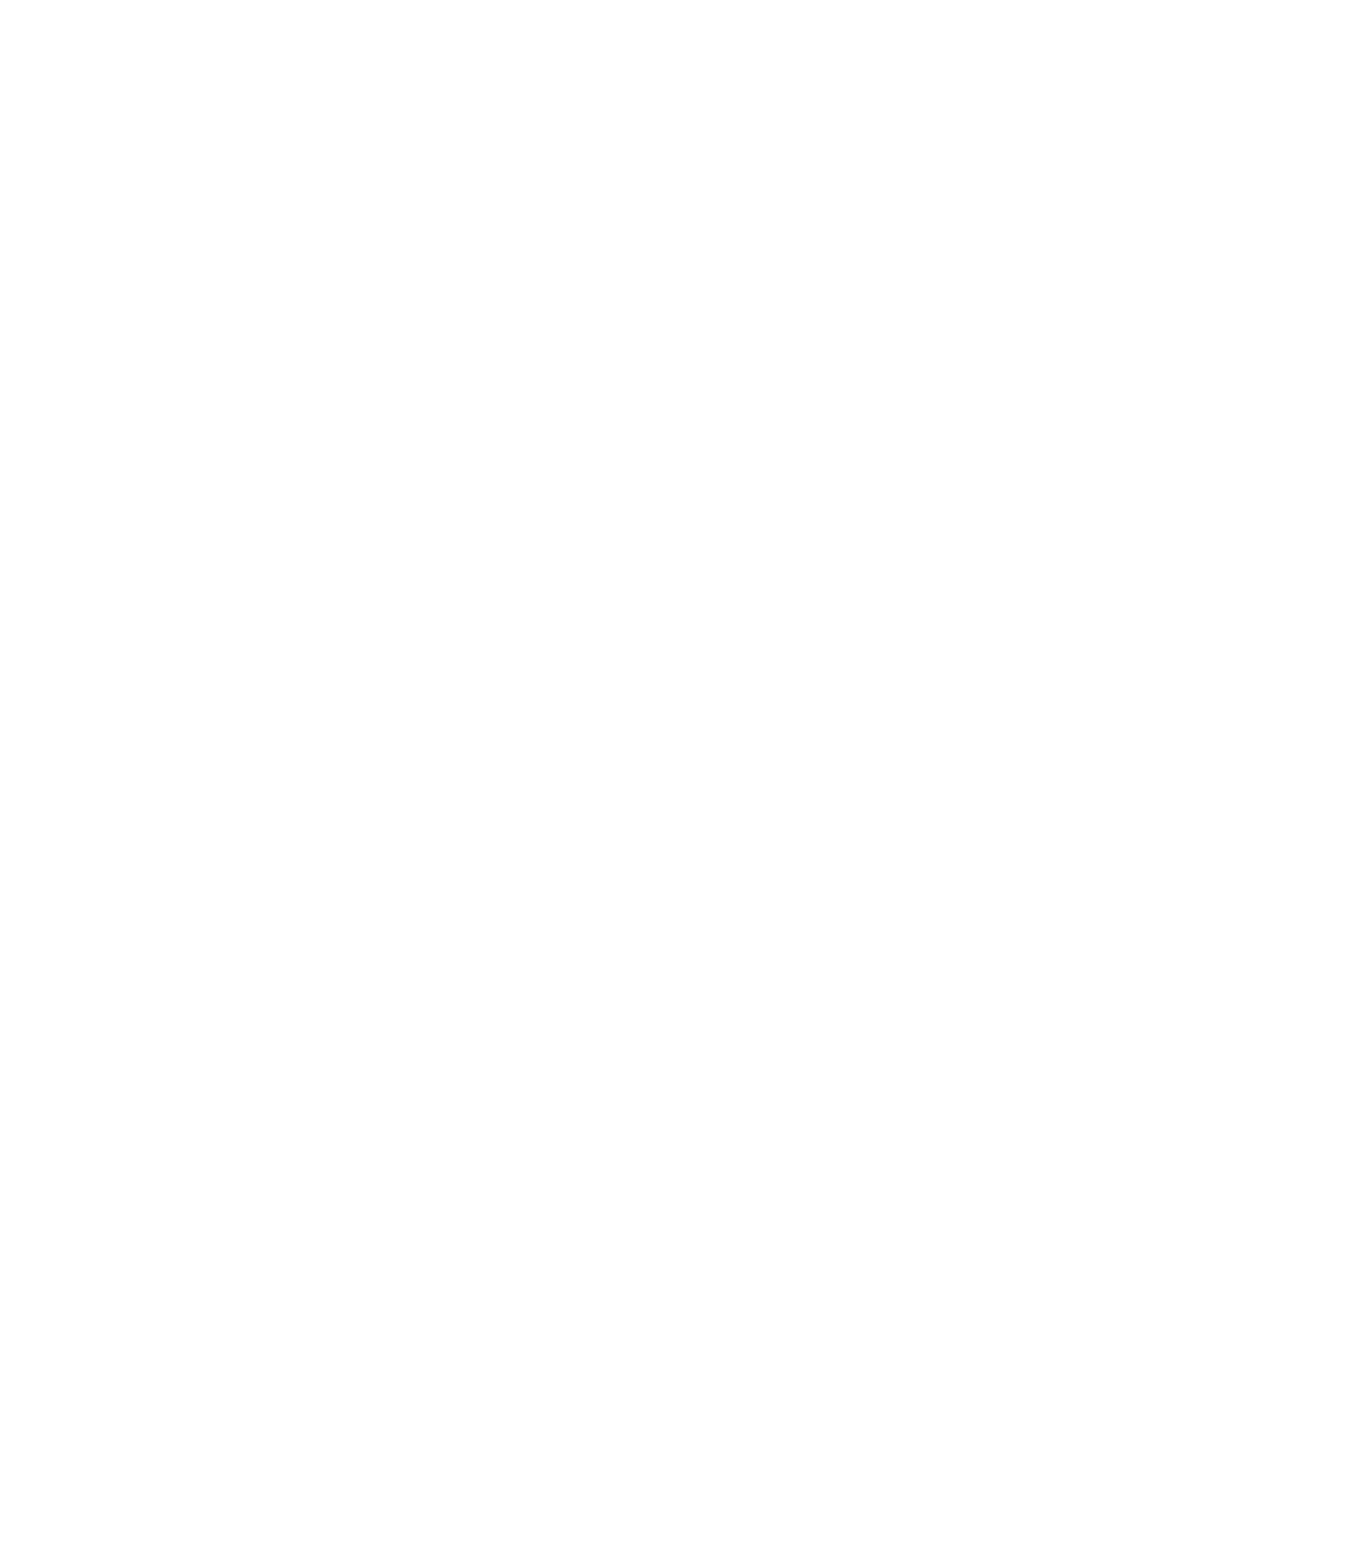 Sappi logo for dark backgrounds (transparent PNG)